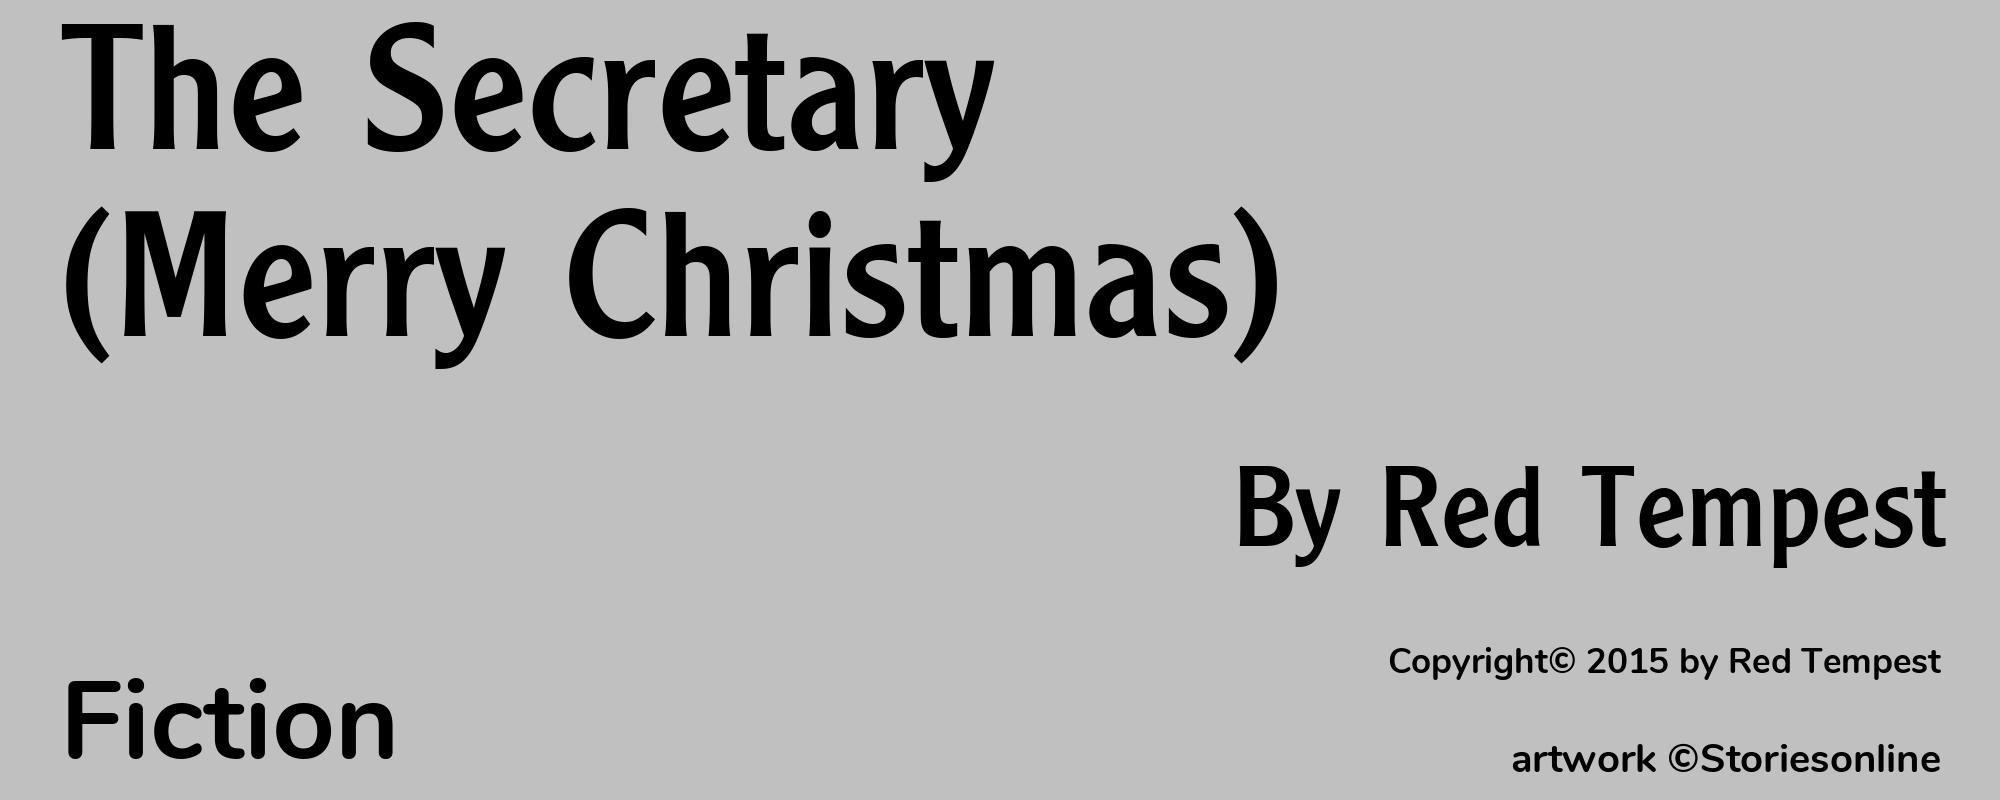 The Secretary (Merry Christmas) - Cover